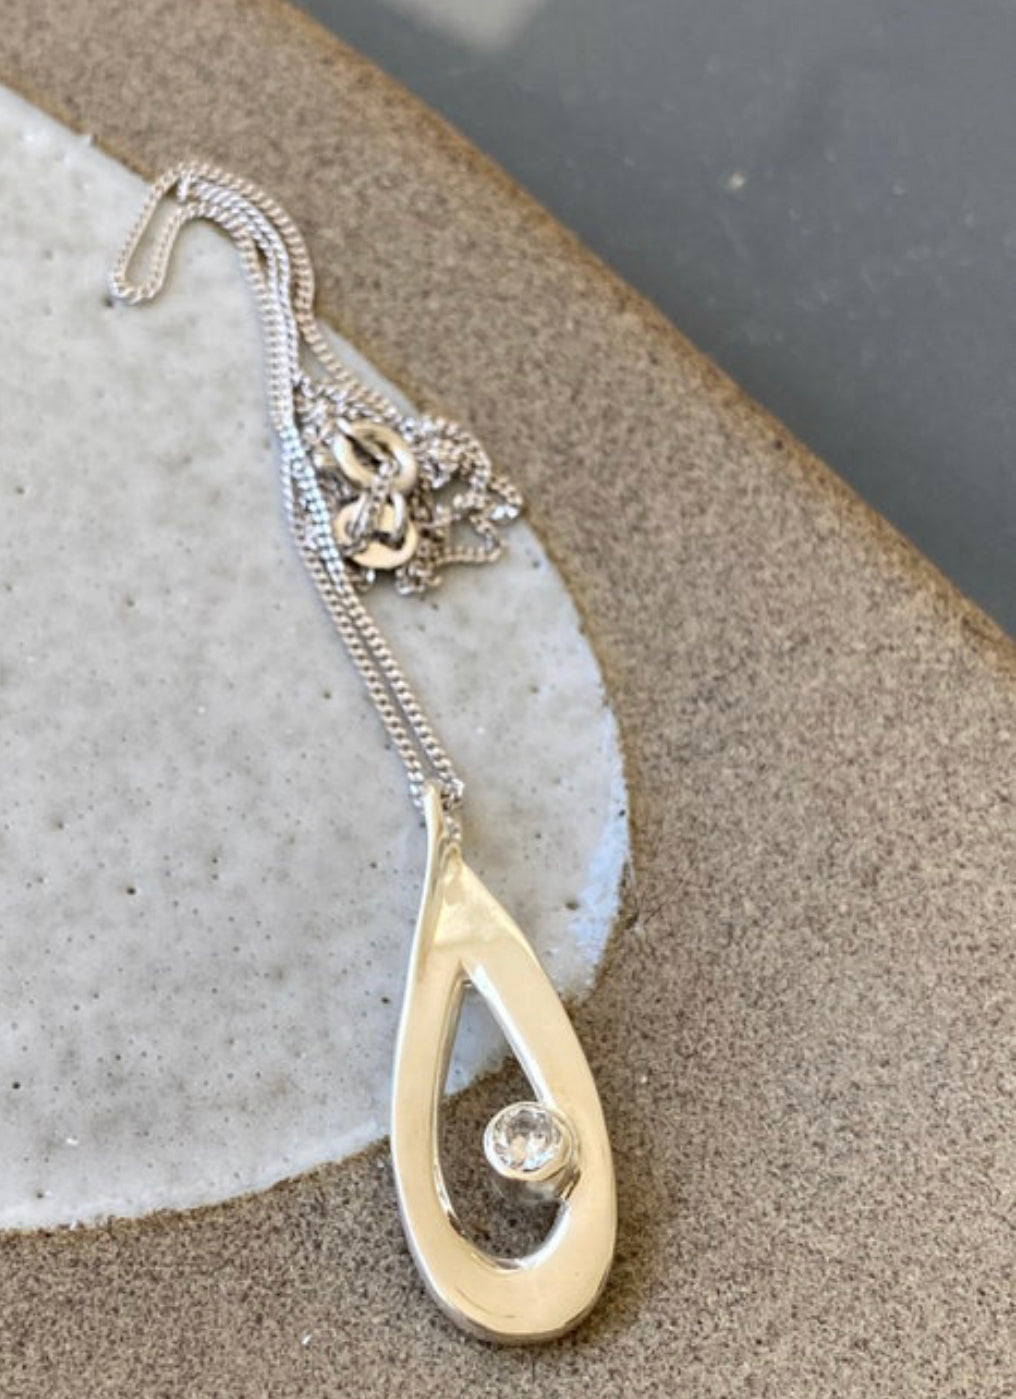 zircon gemstone silver necklace drop shape necklace